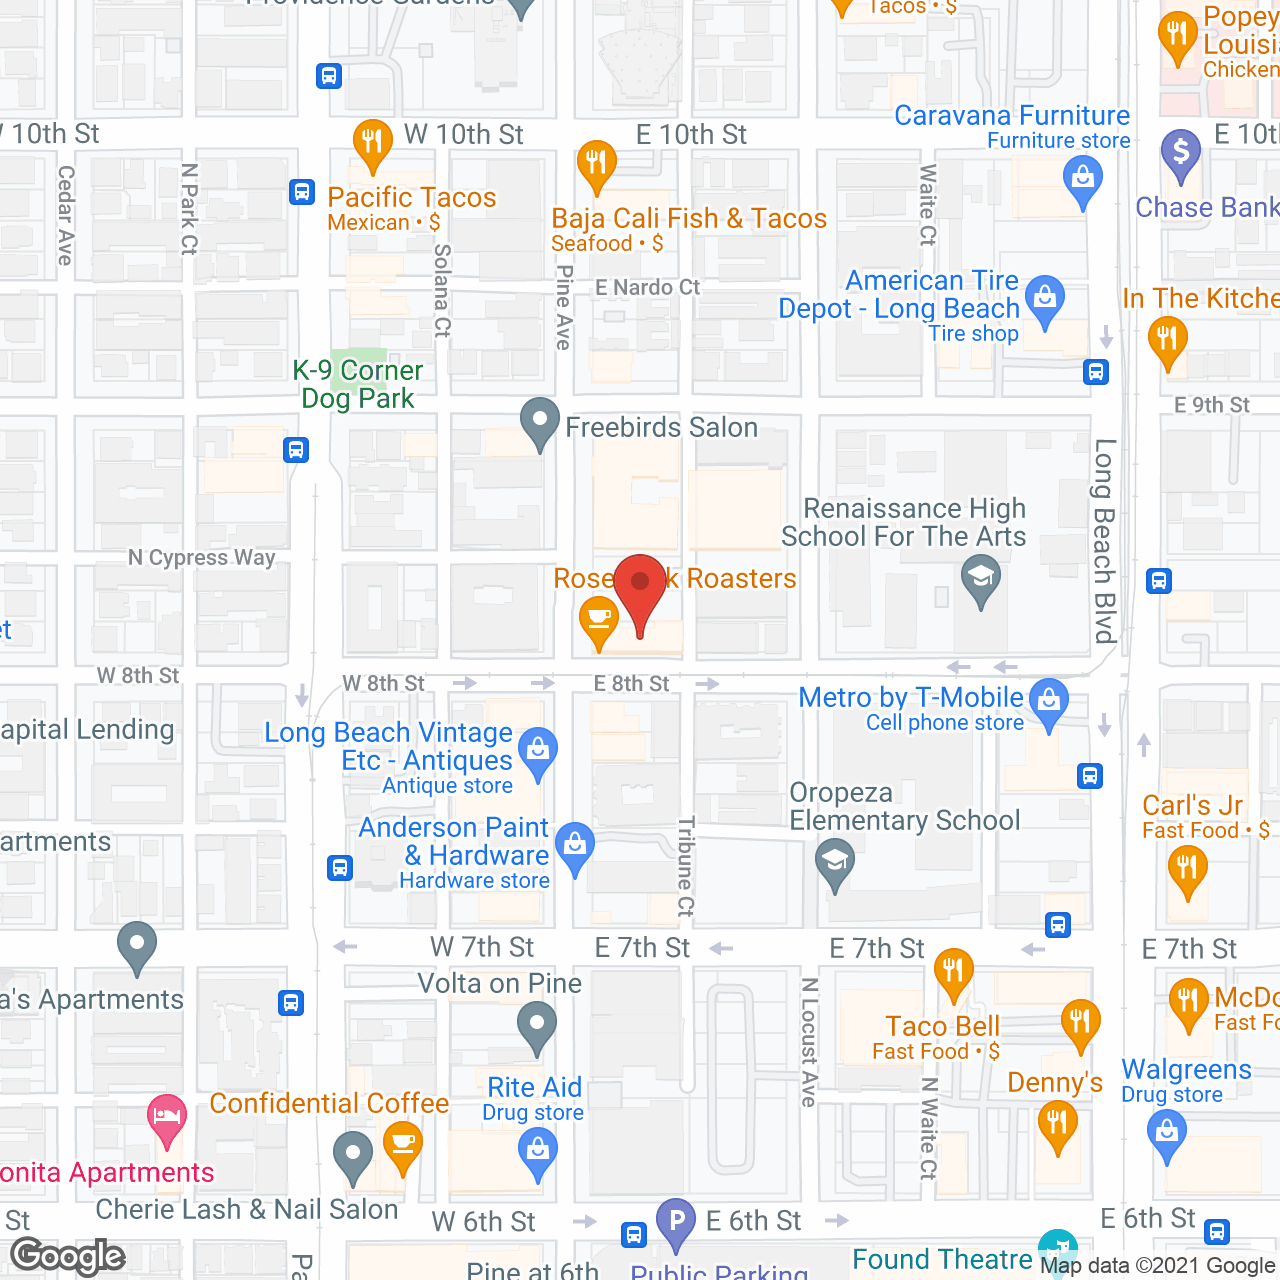 Regency Palms Long Beach in google map